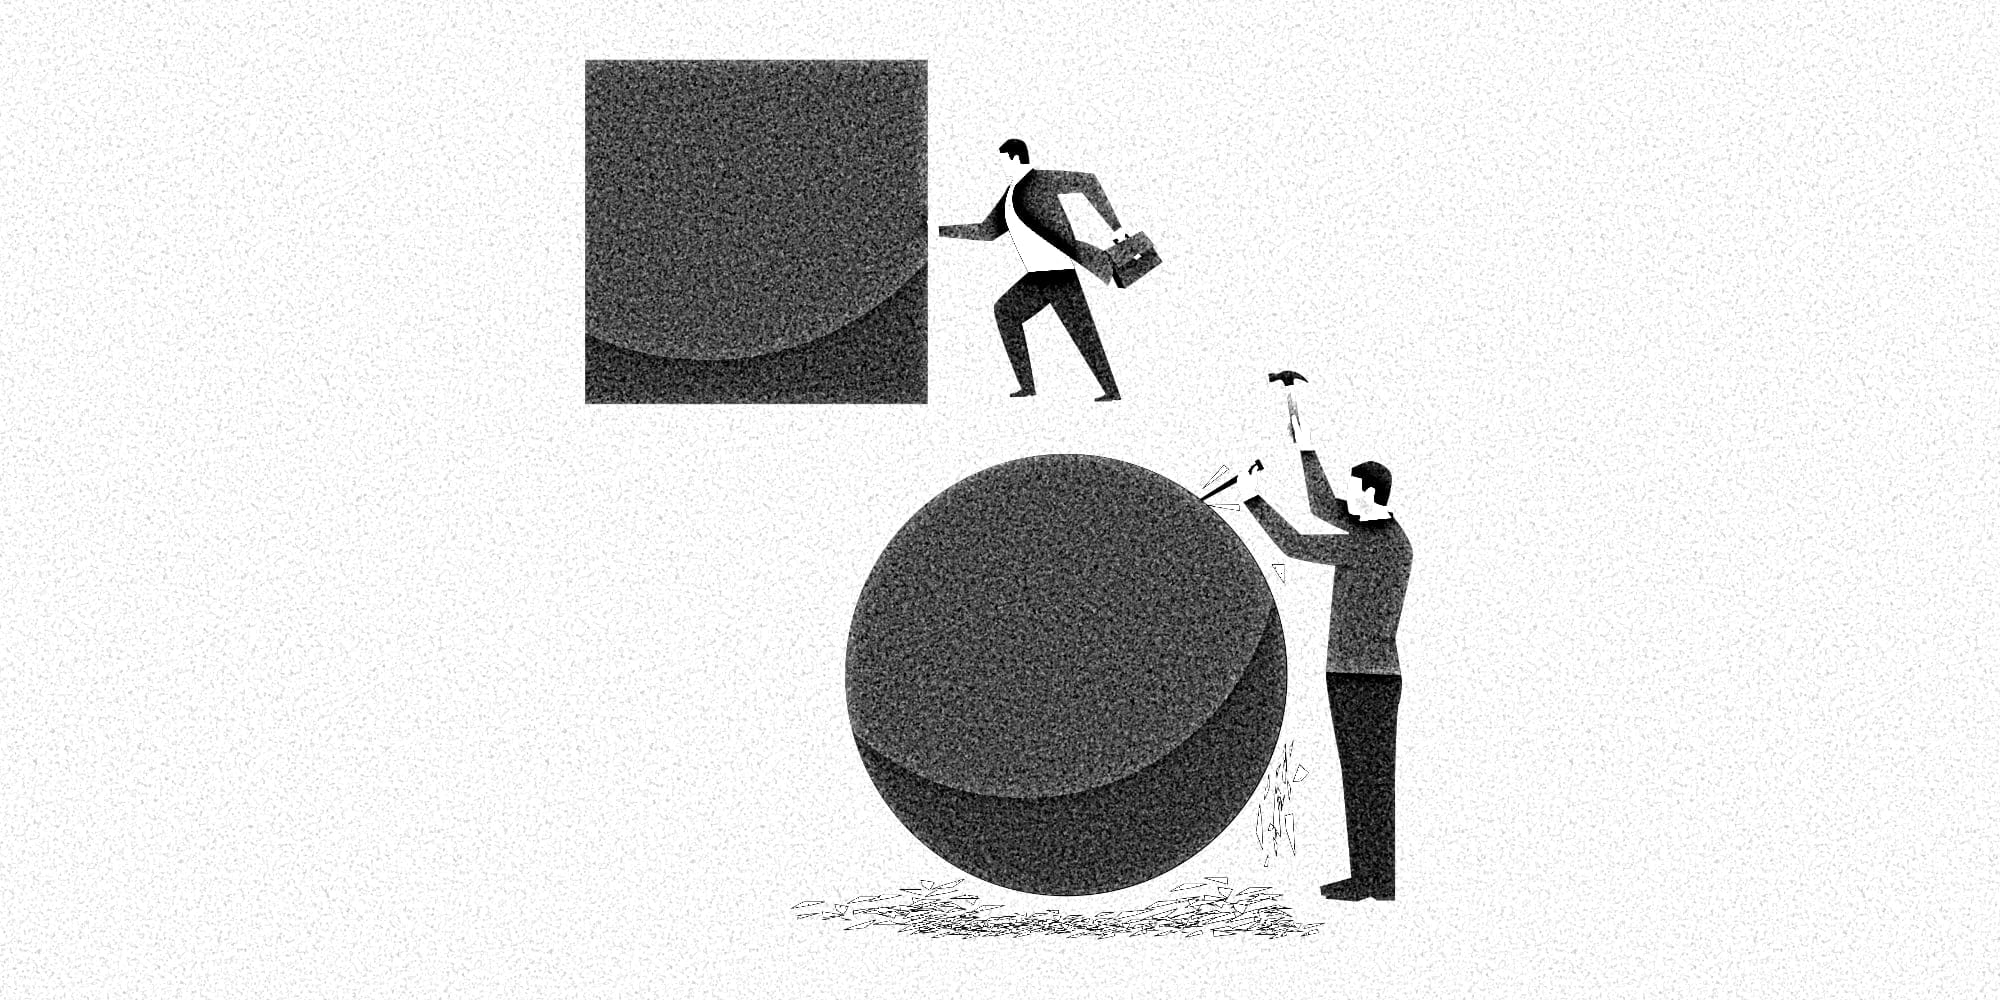 Grafische Darstellung eines Menschen, der ein großes Quadrat vor sich her schiebt, während ein zweiter Mensch das Quadrat zu einer Kugel formt, ehe er losläuft.